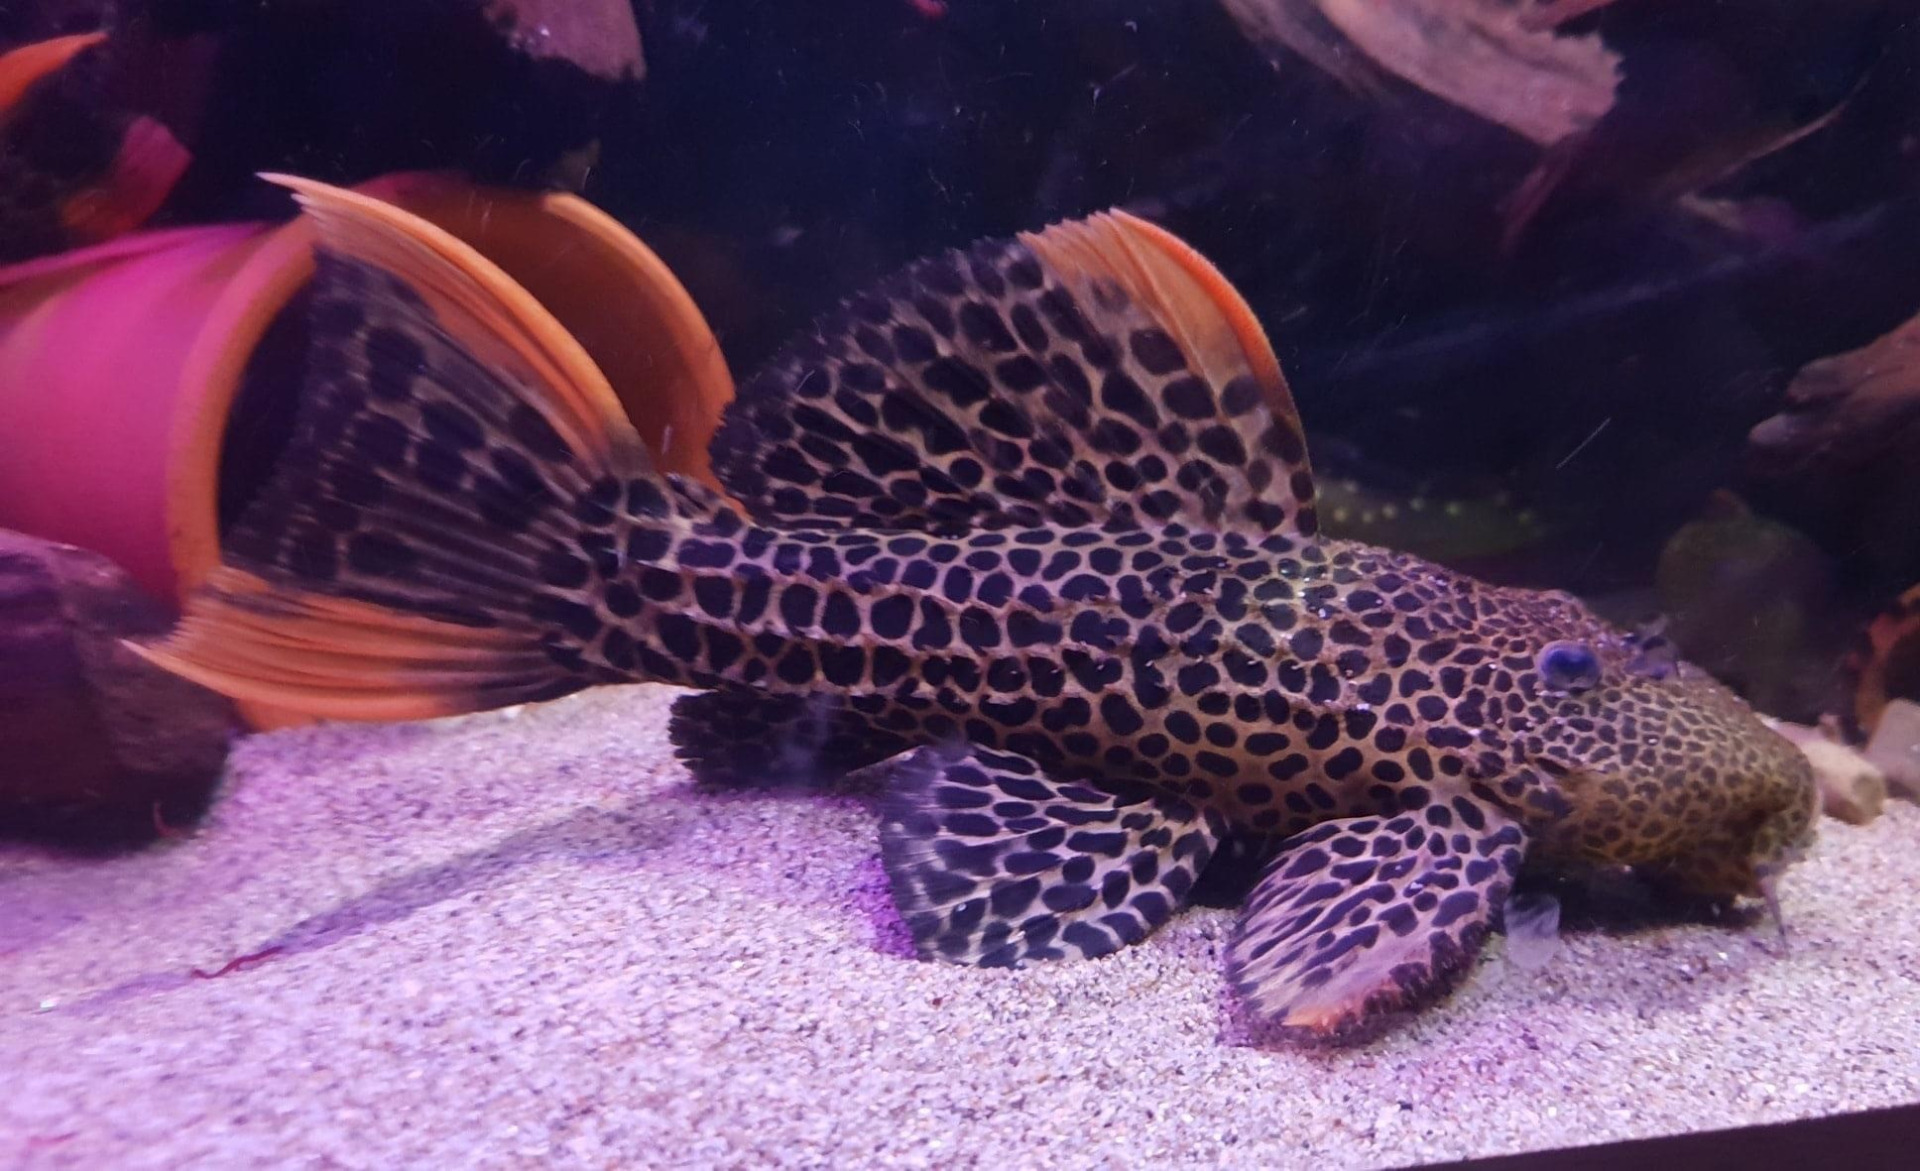 L-Plec fish